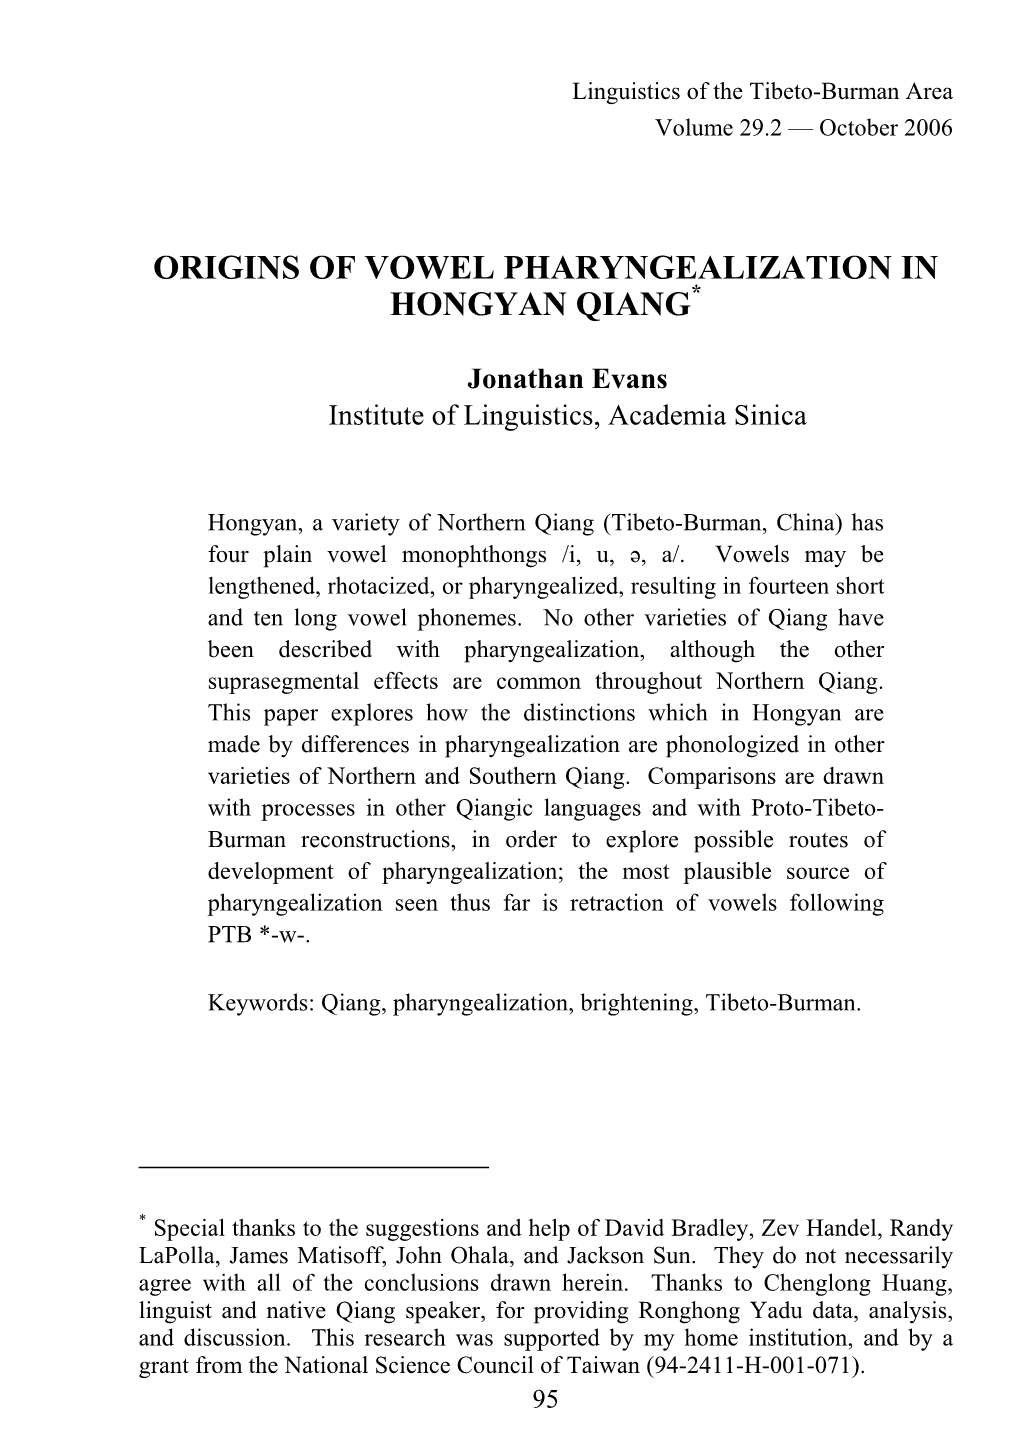 Origins of Vowel Pharyngealization in Hongyan Qiang*